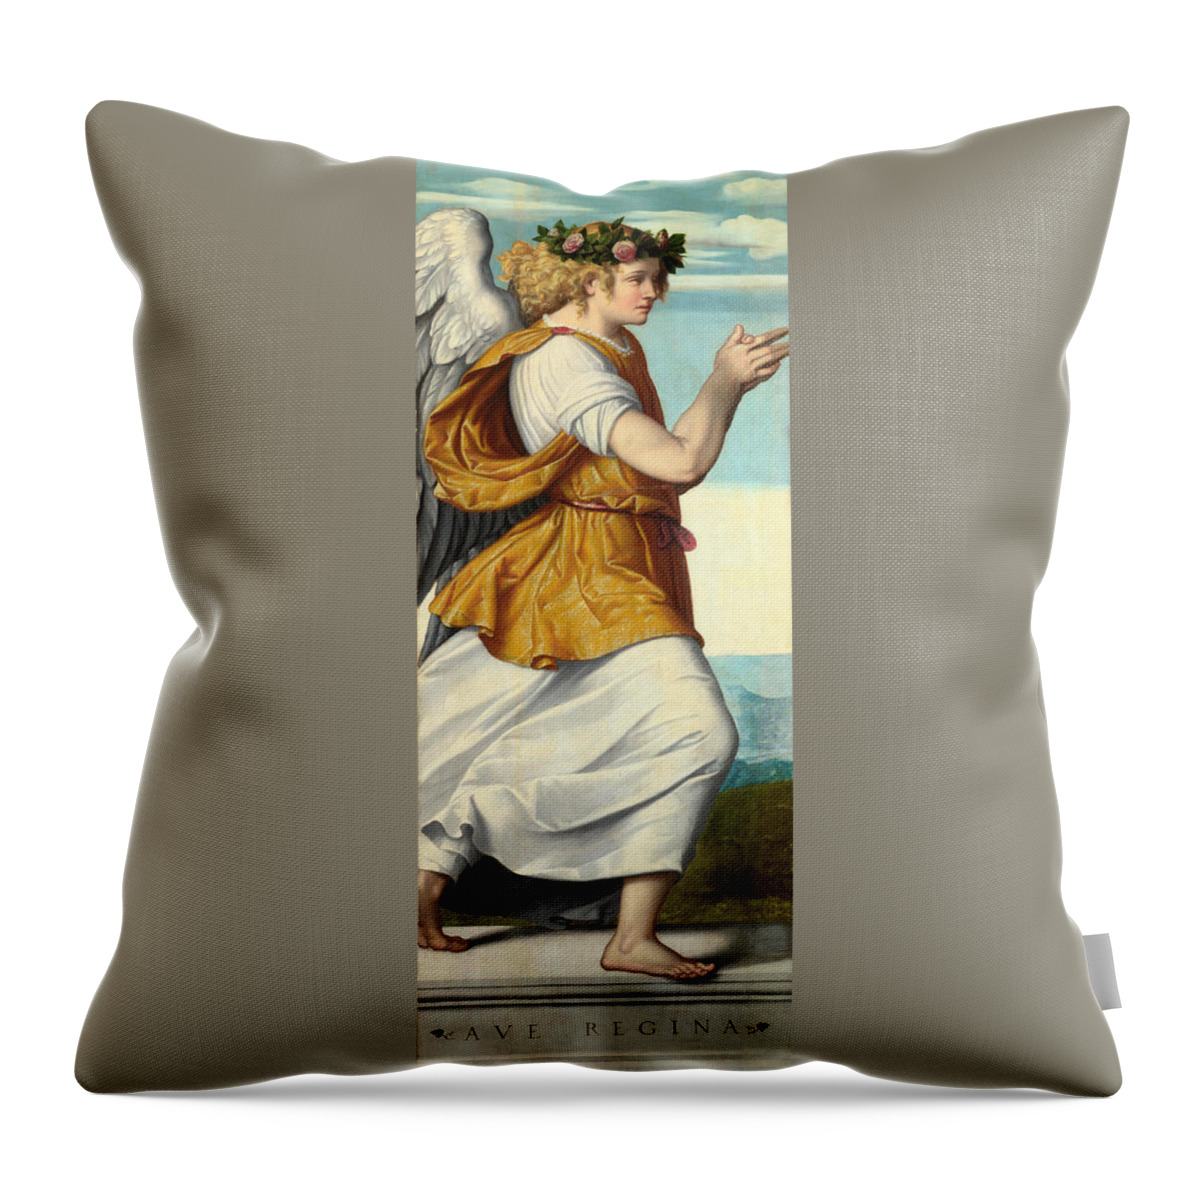 Moretto Da Brescia Throw Pillow featuring the painting An Adoring Angel by Moretto da Brescia